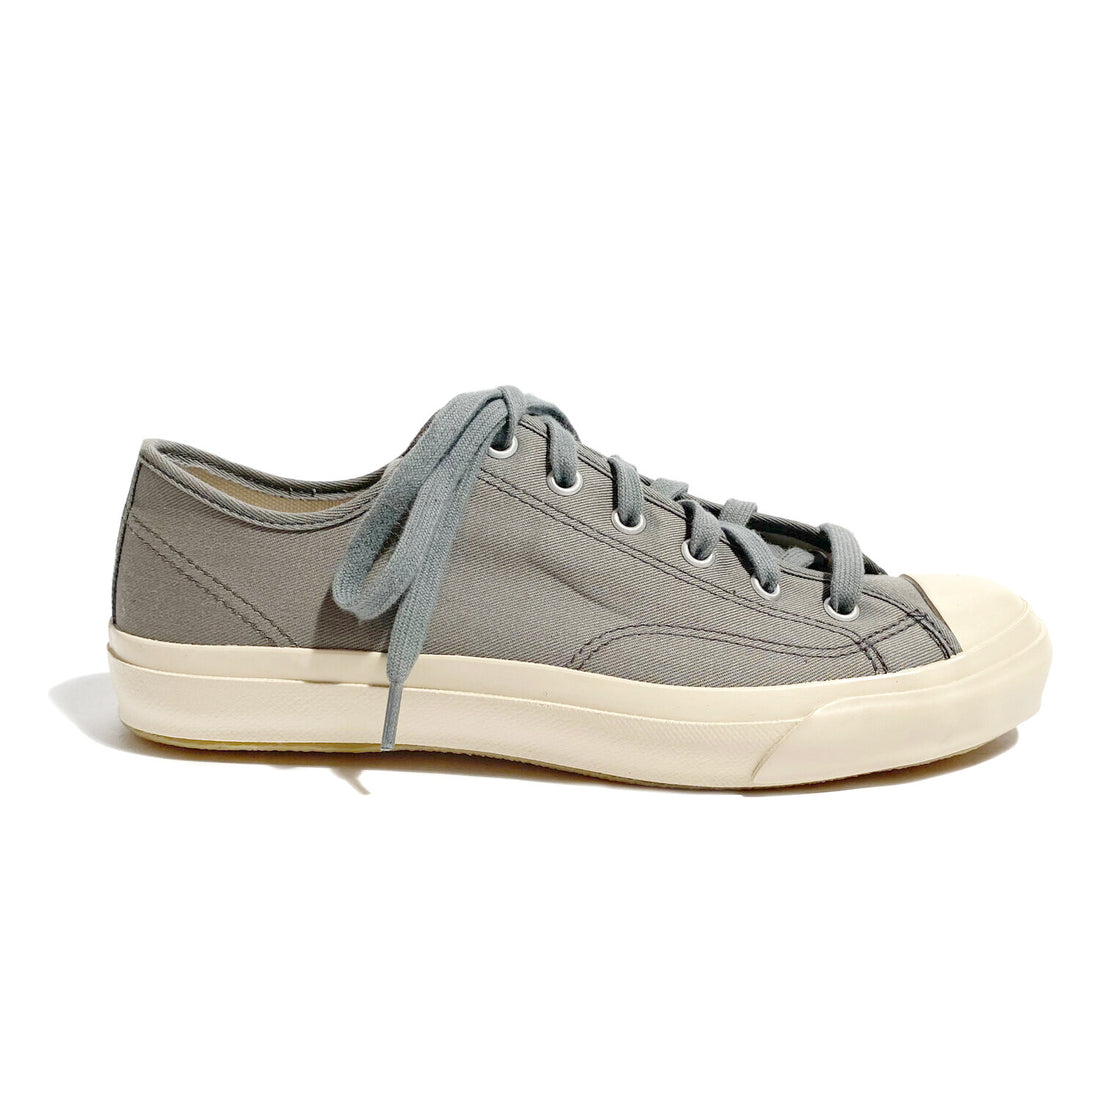 Evam Eva Canvas Sneakers in Gray